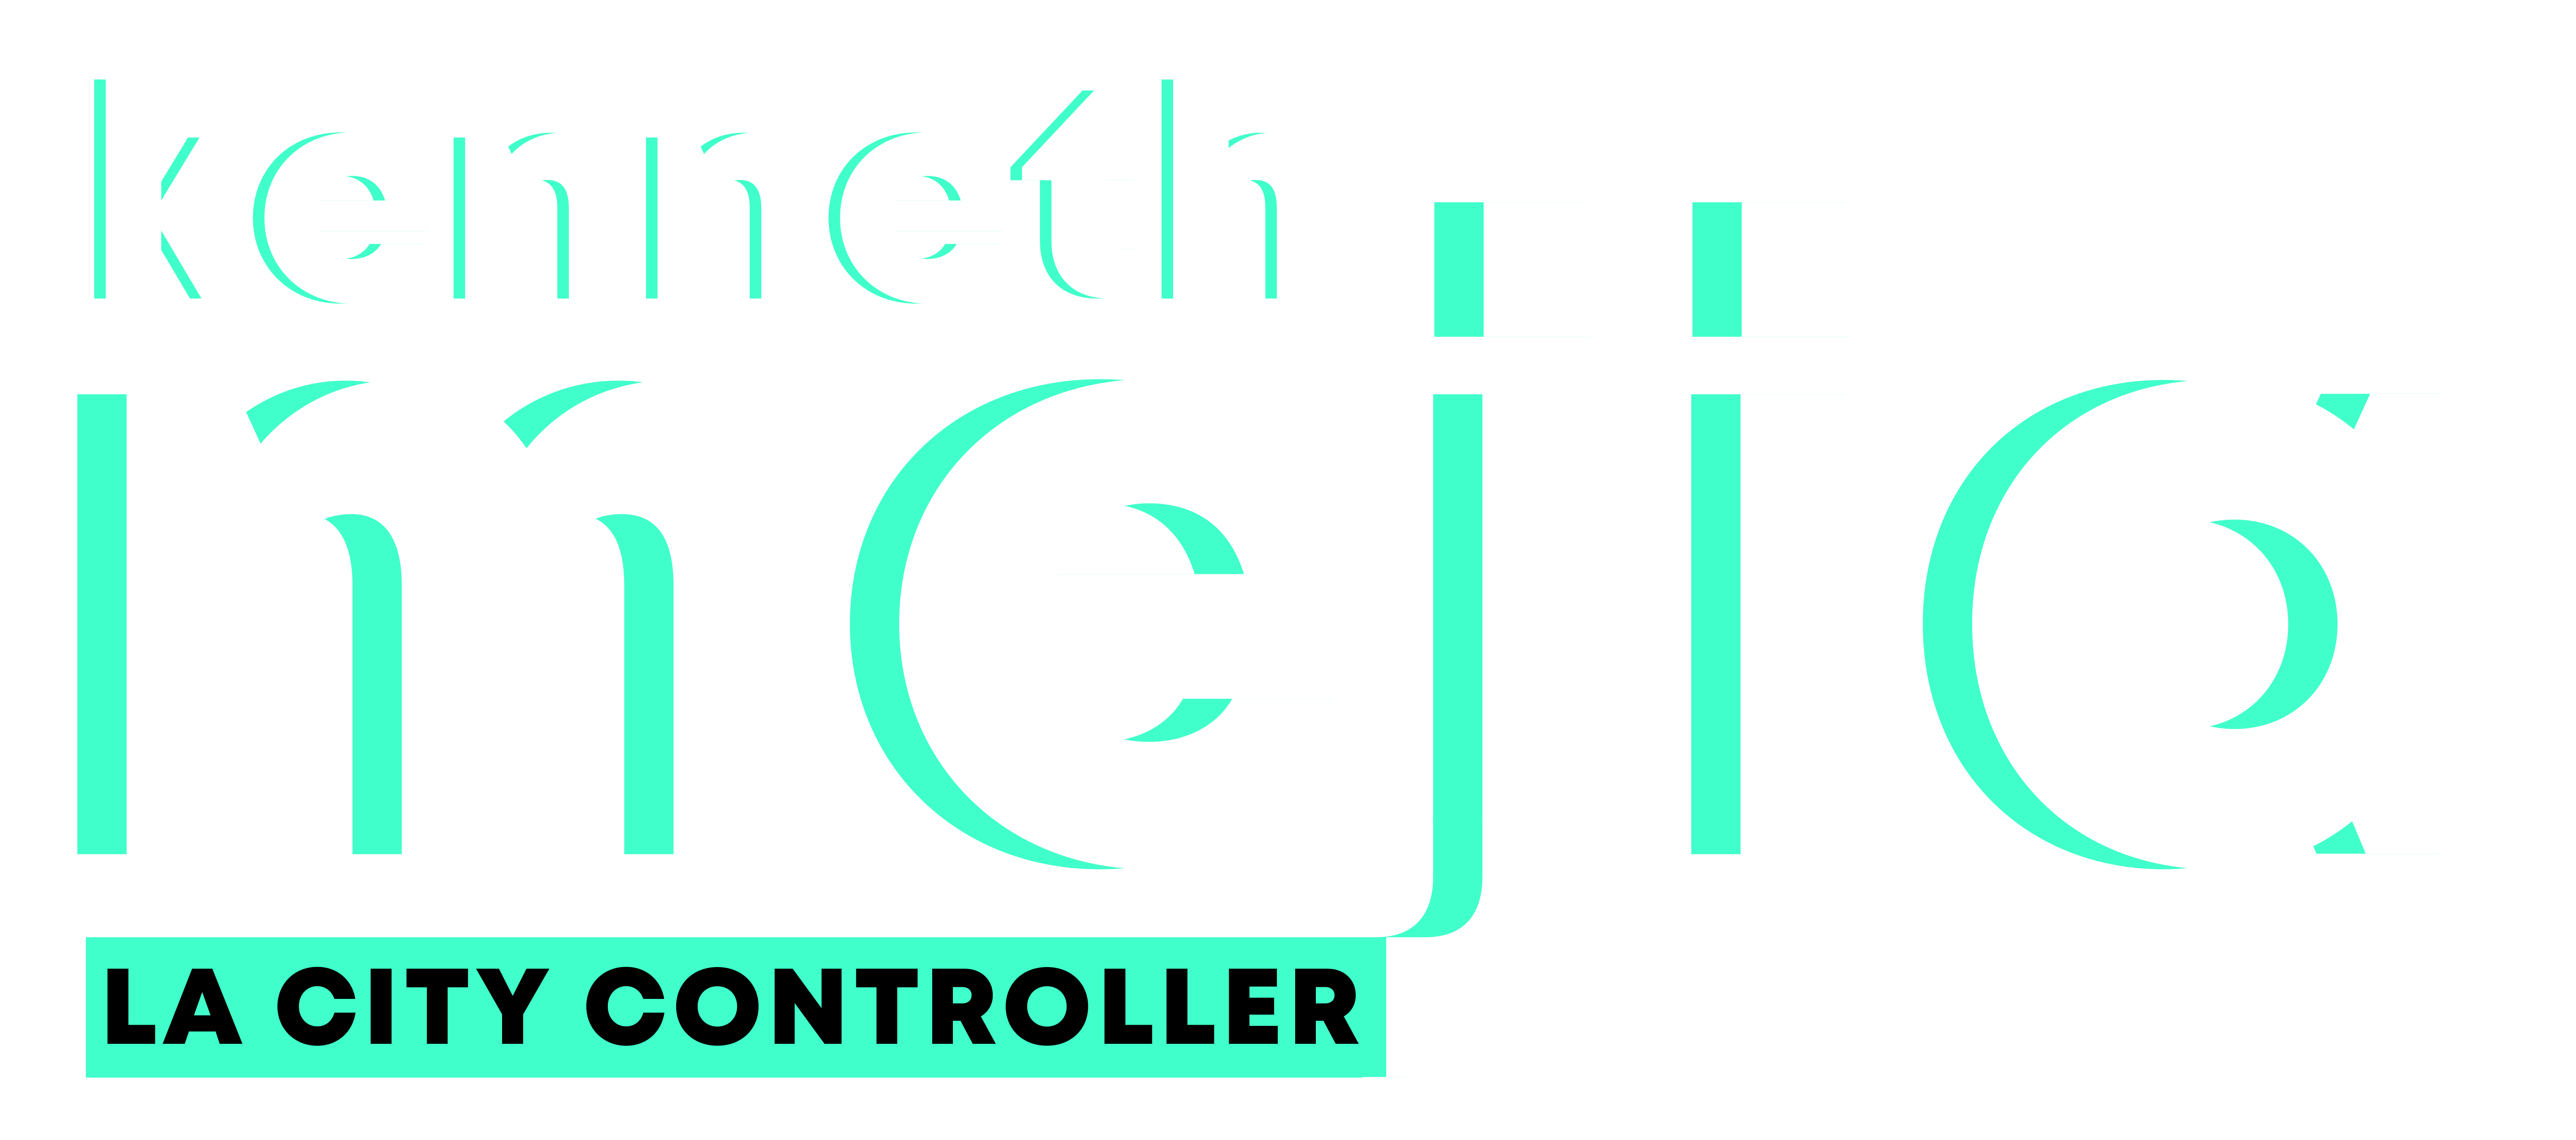 Kenneth Mejia Logo